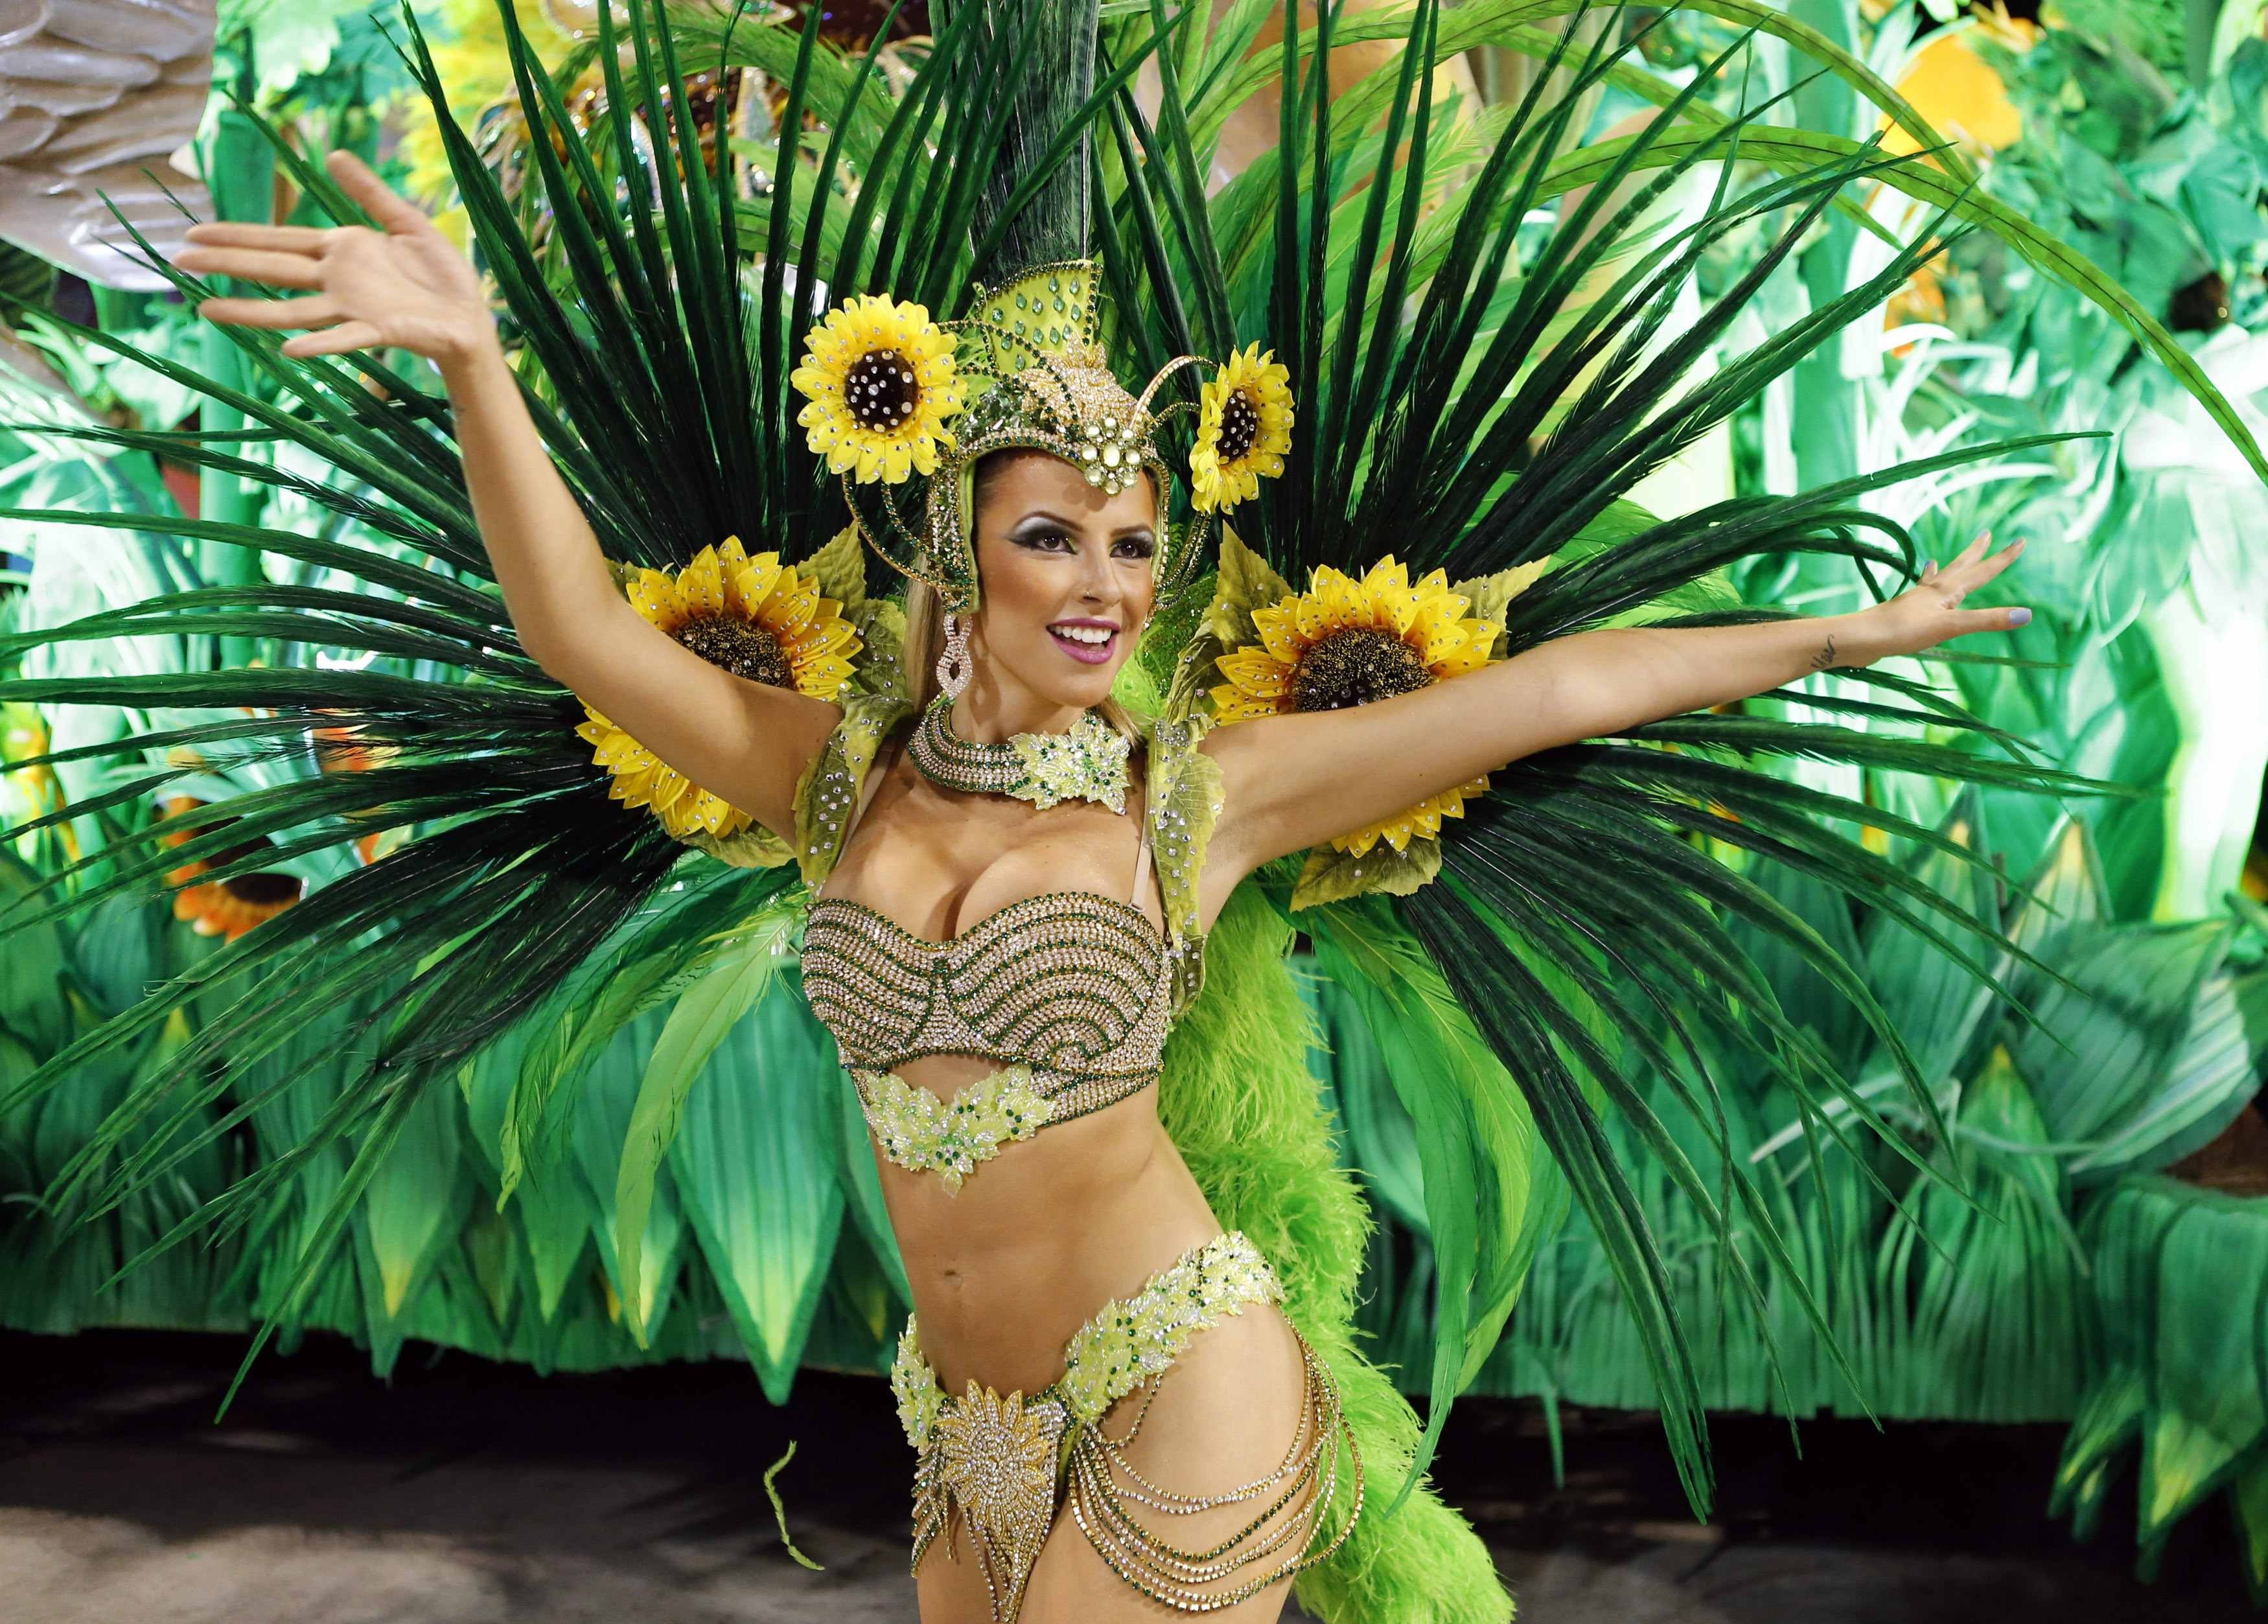 Танец карнавал. Самба карнавал в Бразилии. Бразилия (Самба, карнавал, перья) СПБ. Сеу певица Бразилия. Латинская Америка бразильский карнавал.